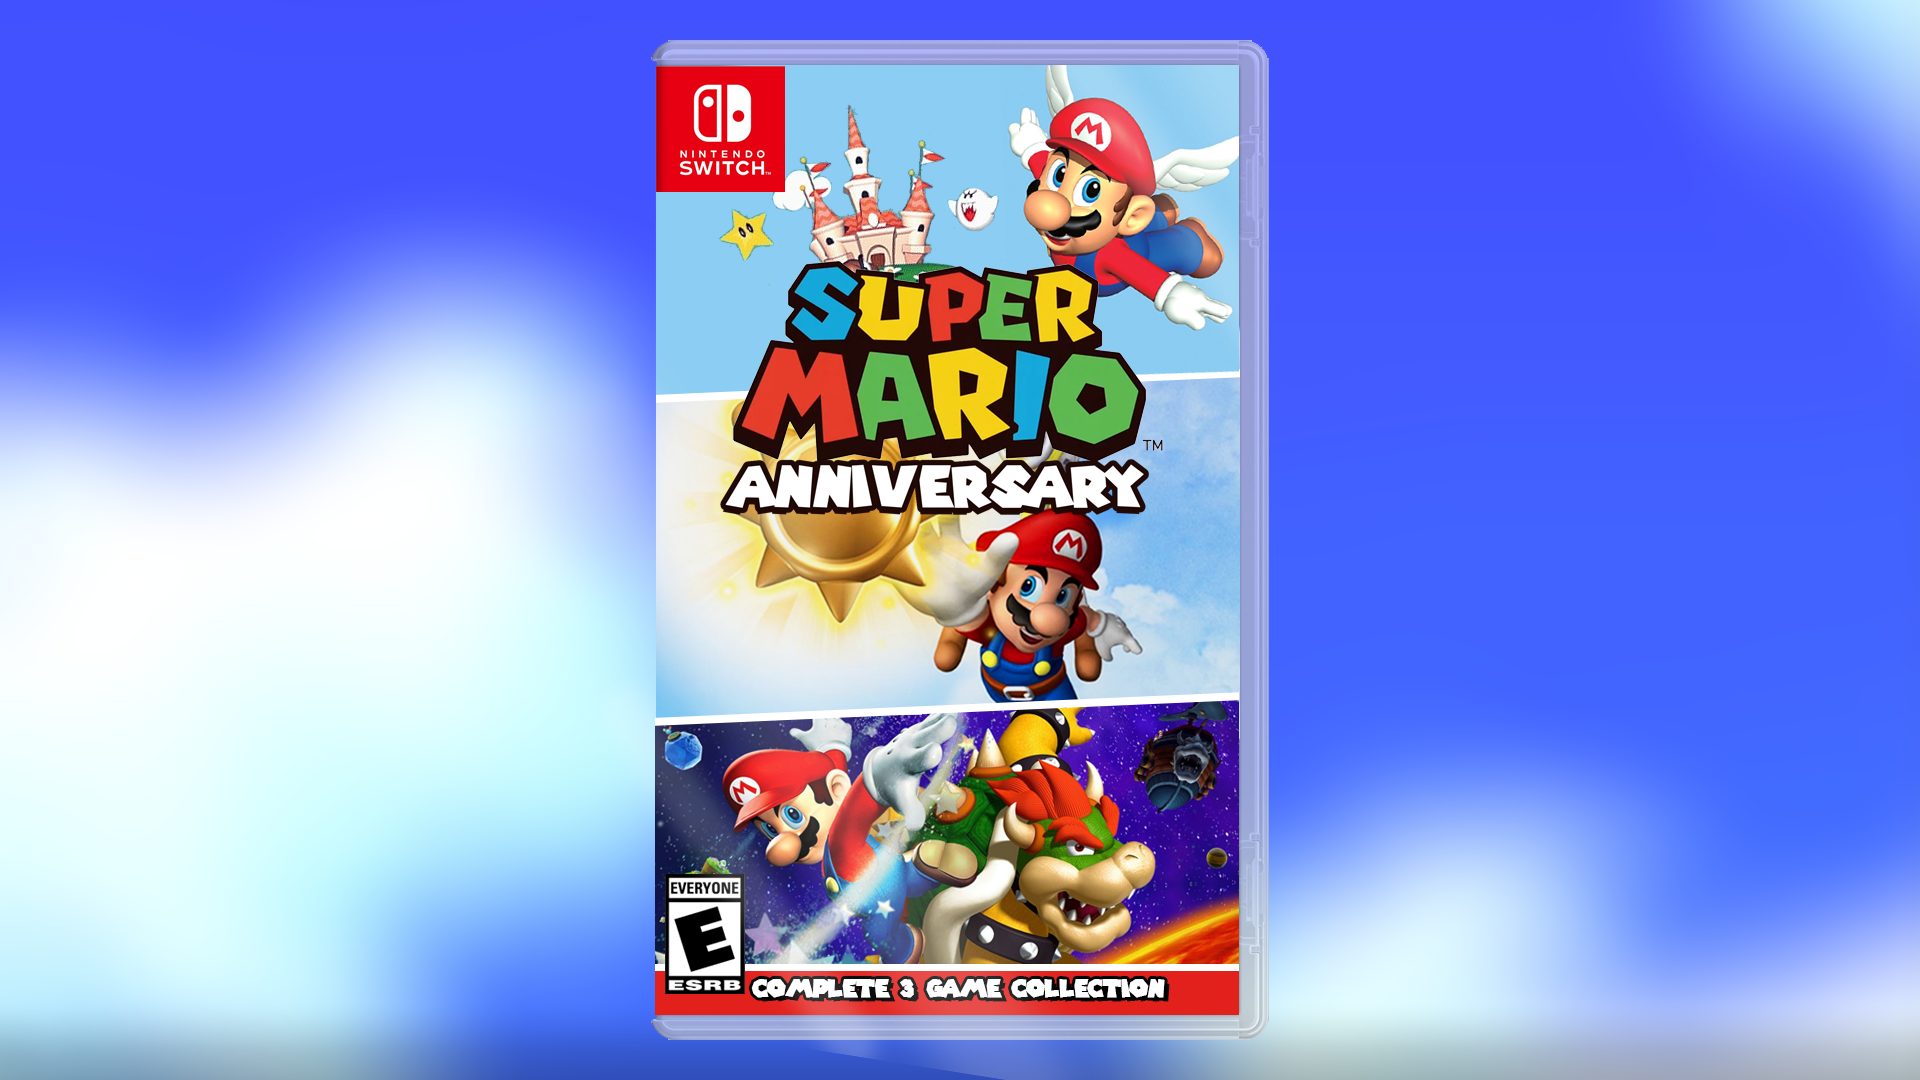 Super Mario Anniversary (35th Anniversary Collection) Switch Box Art Concept